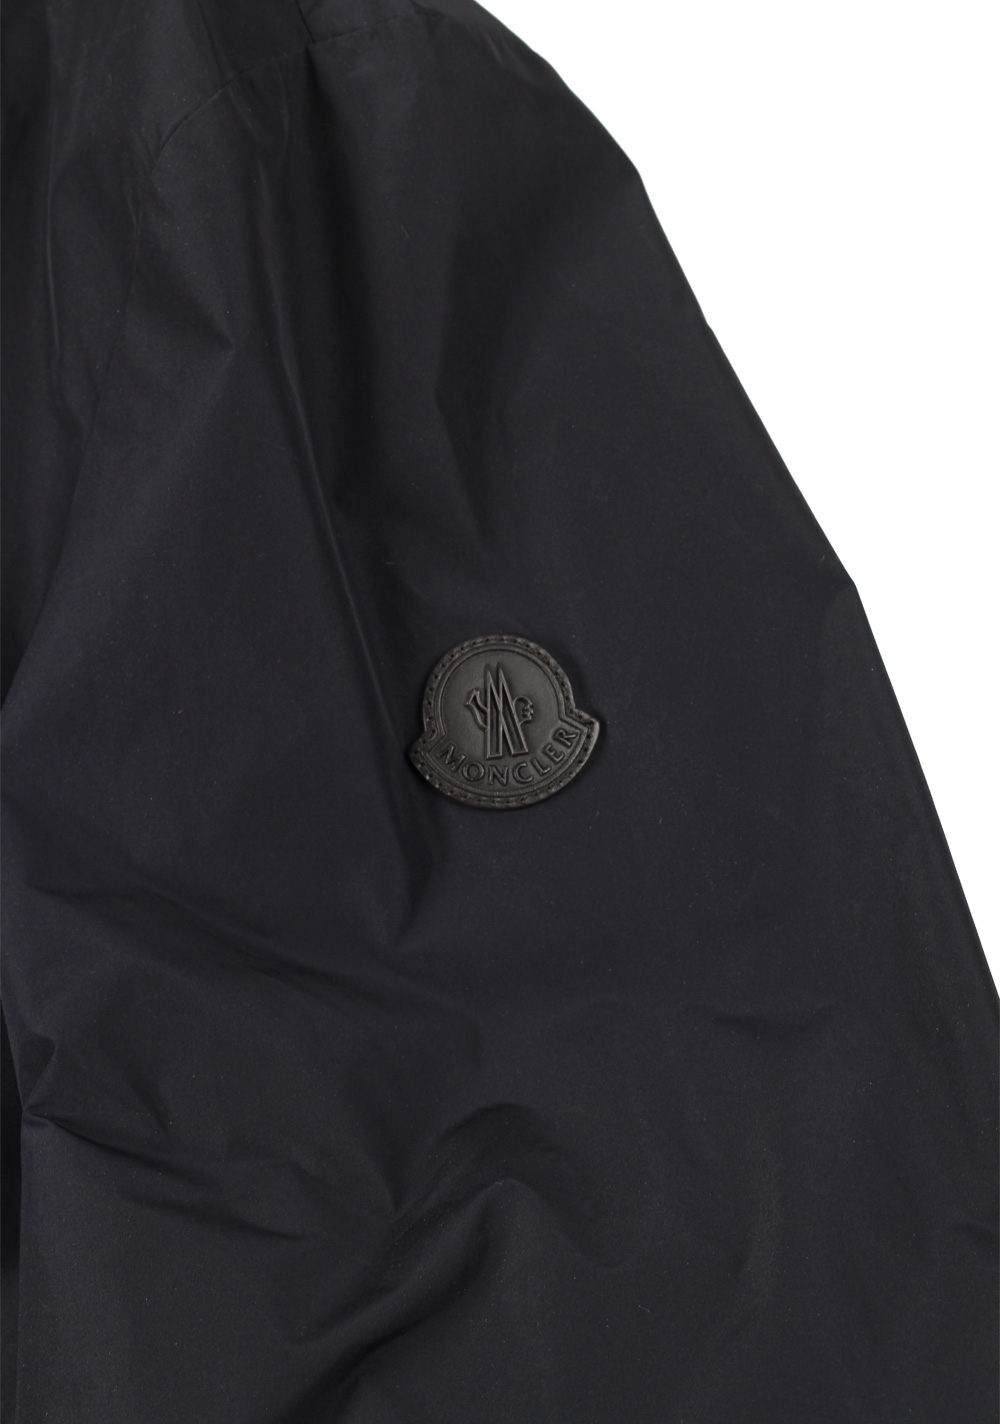 Moncler Mantois Blue Jacket Coat Size 7 / 3XL / 58 / 48R U.S. | Costume Limité